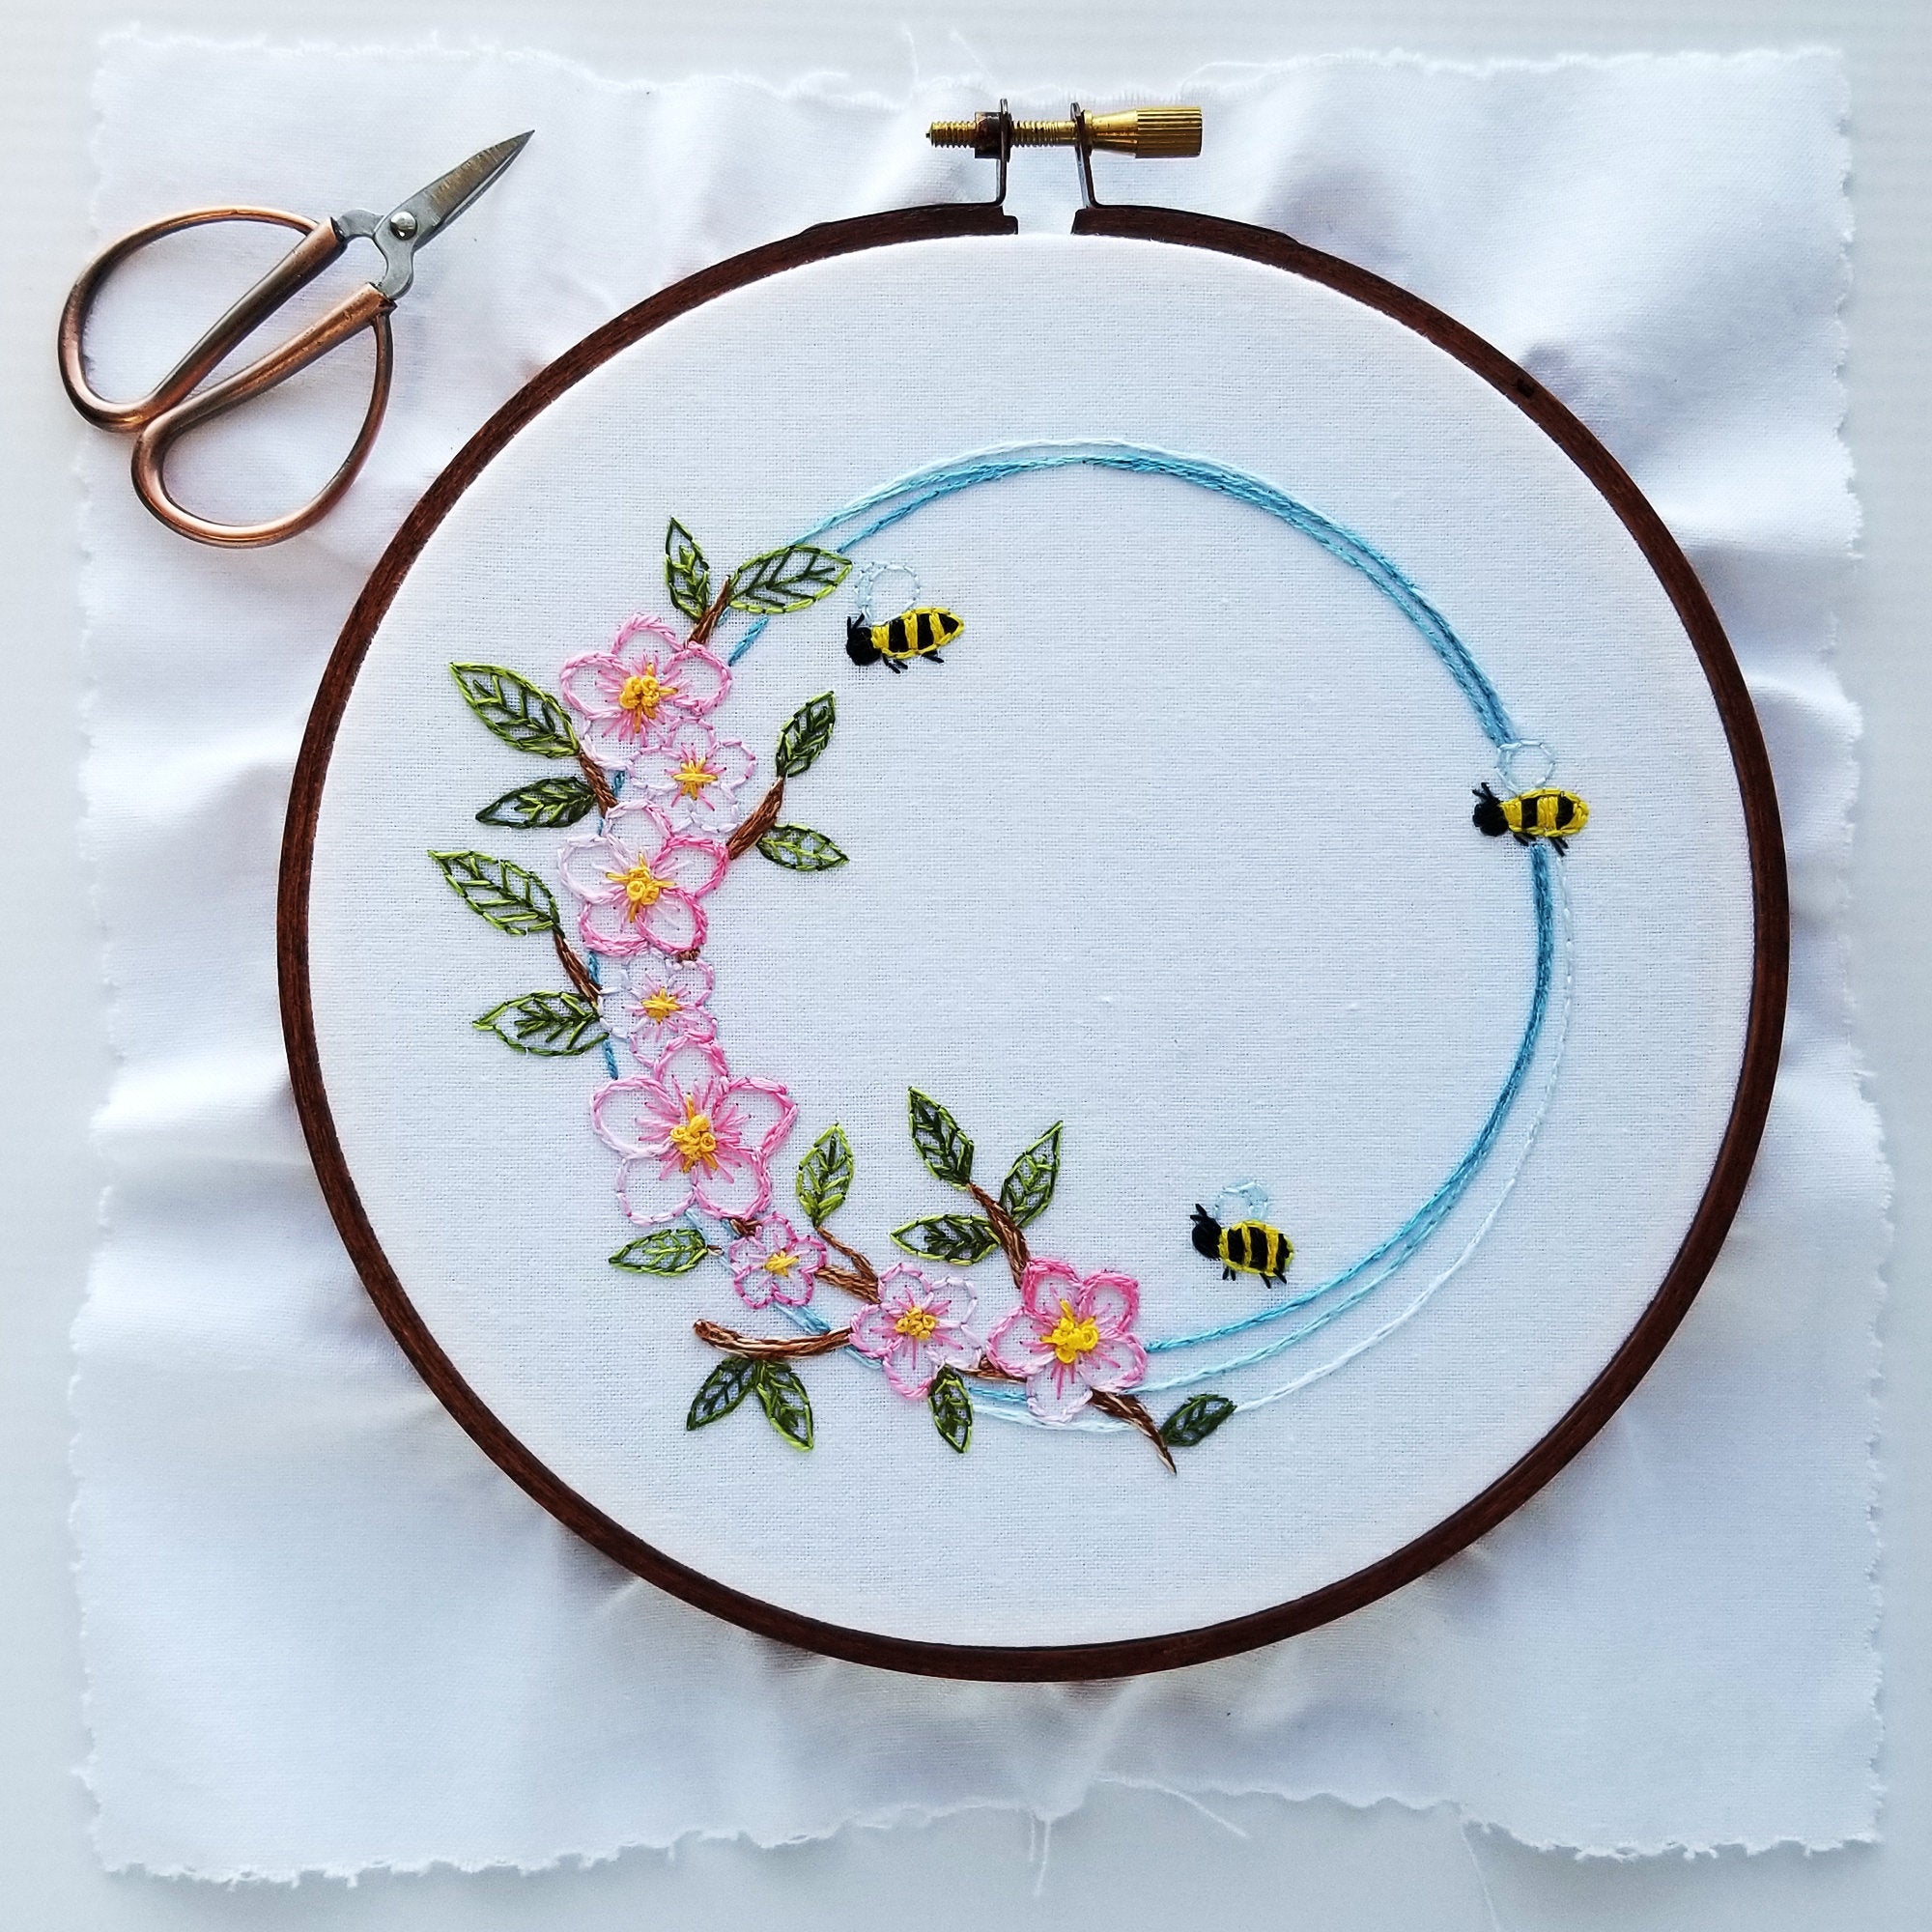 Kit - Apple Blossoms & Honey Bees Hand Embroidery Kit - Beginner